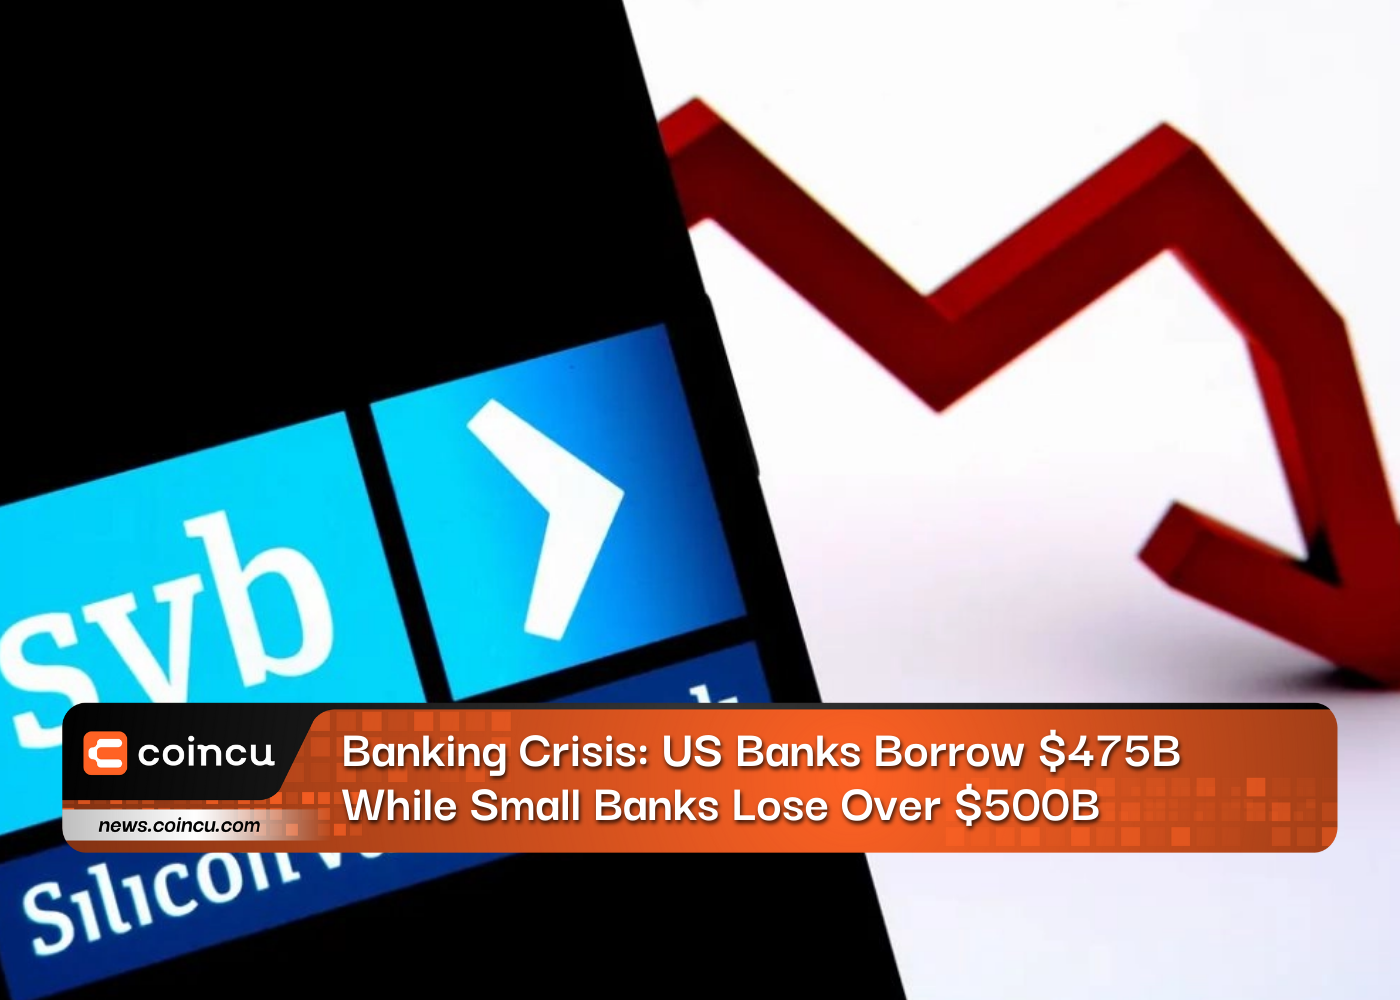 बैंकिंग संकट: अमेरिकी बैंक $475B उधार लेते हैं जबकि छोटे बैंक $500B से अधिक का नुकसान उठाते हैं